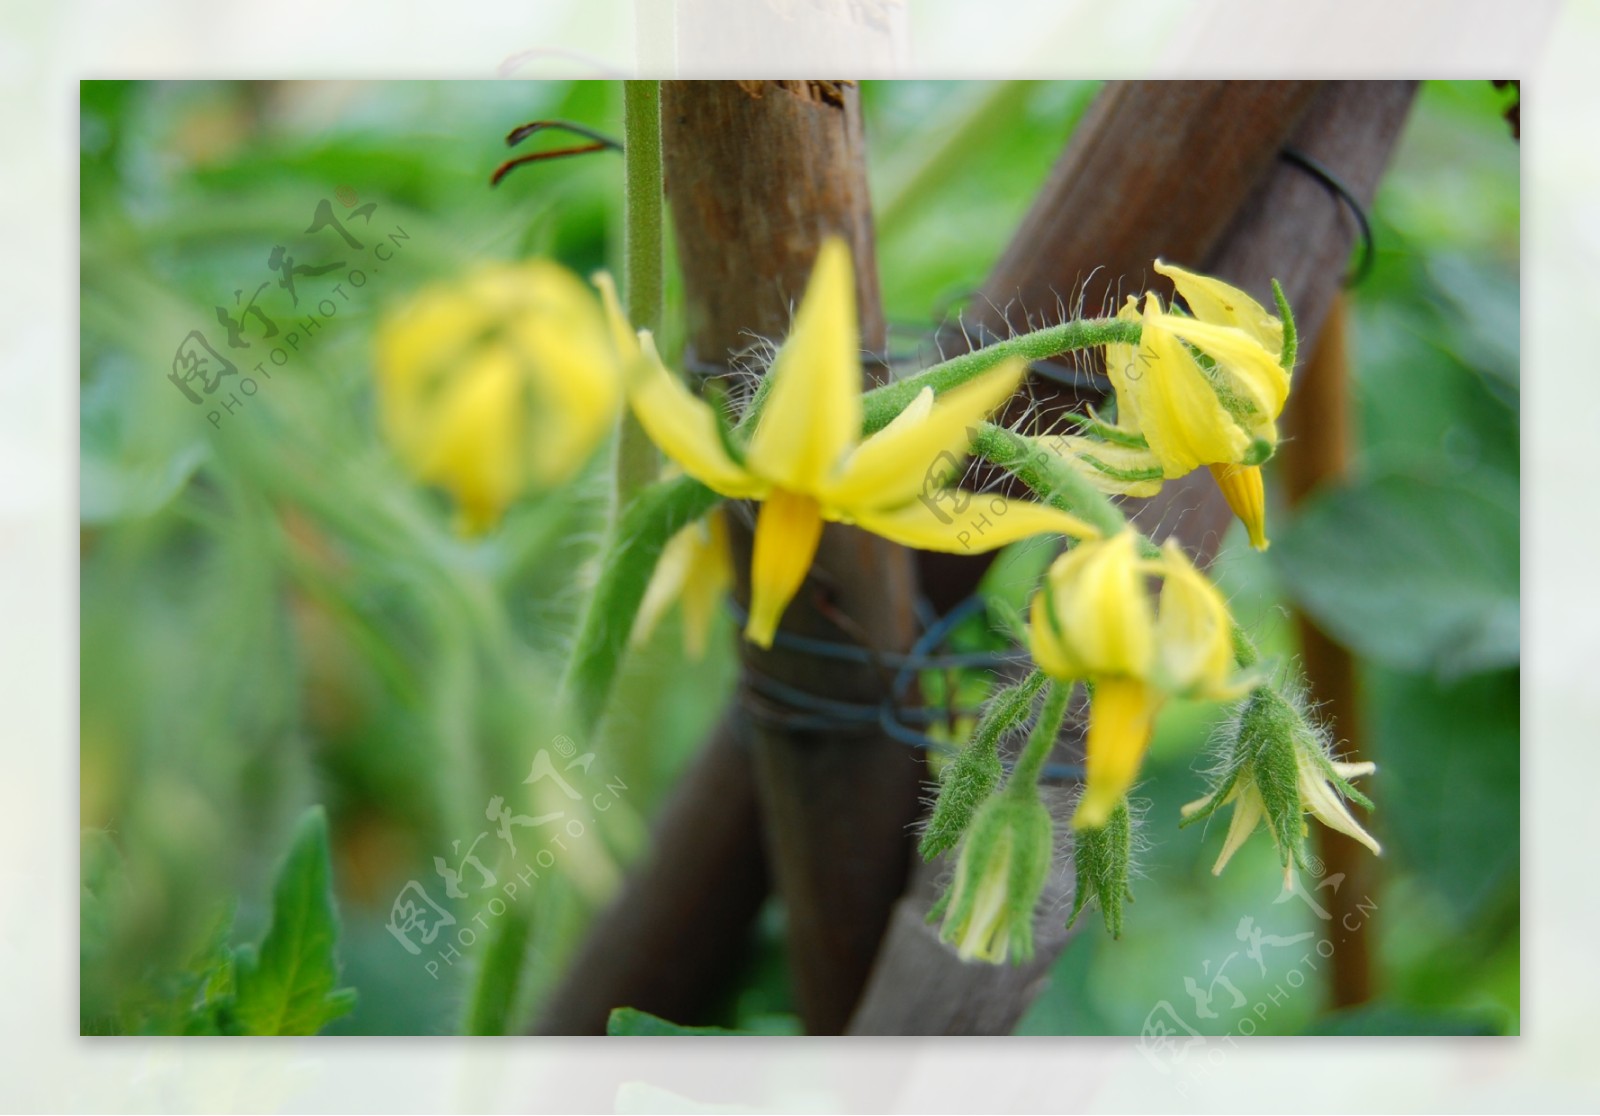 番茄花和小番茄 库存图片. 图片 包括有 玻色子, 萌芽, 叶子, 绽放, 水多, 花瓣, 培养, 增长 - 219989315